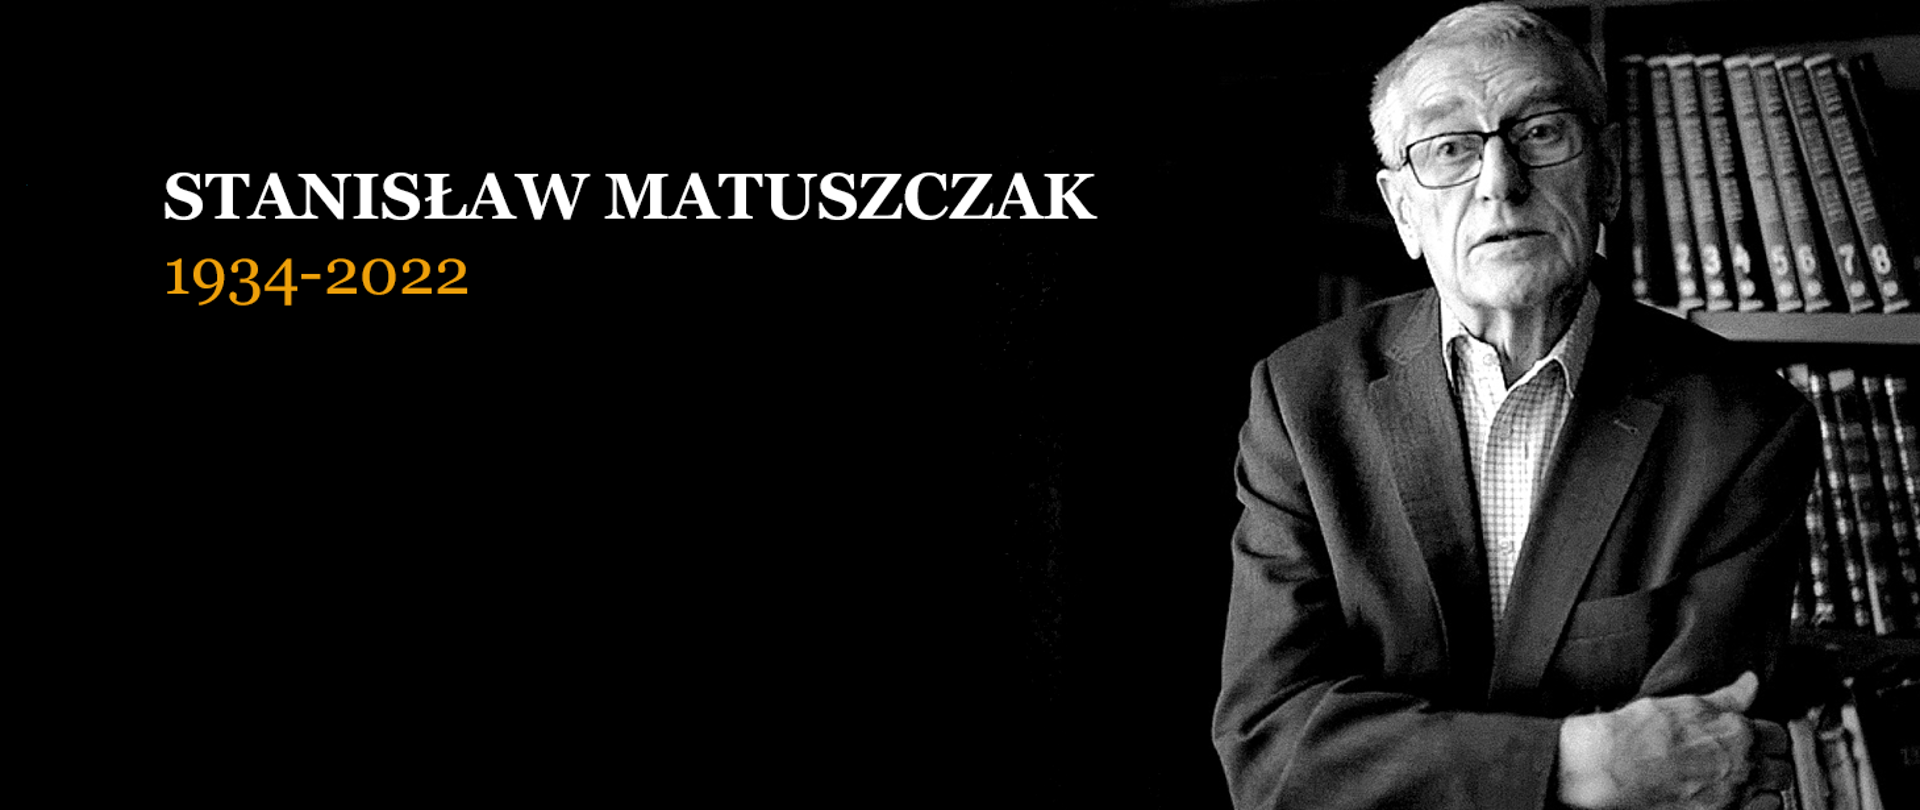 zdjęcie Stanisława Matuszczaka na czarnym tle z podpisem